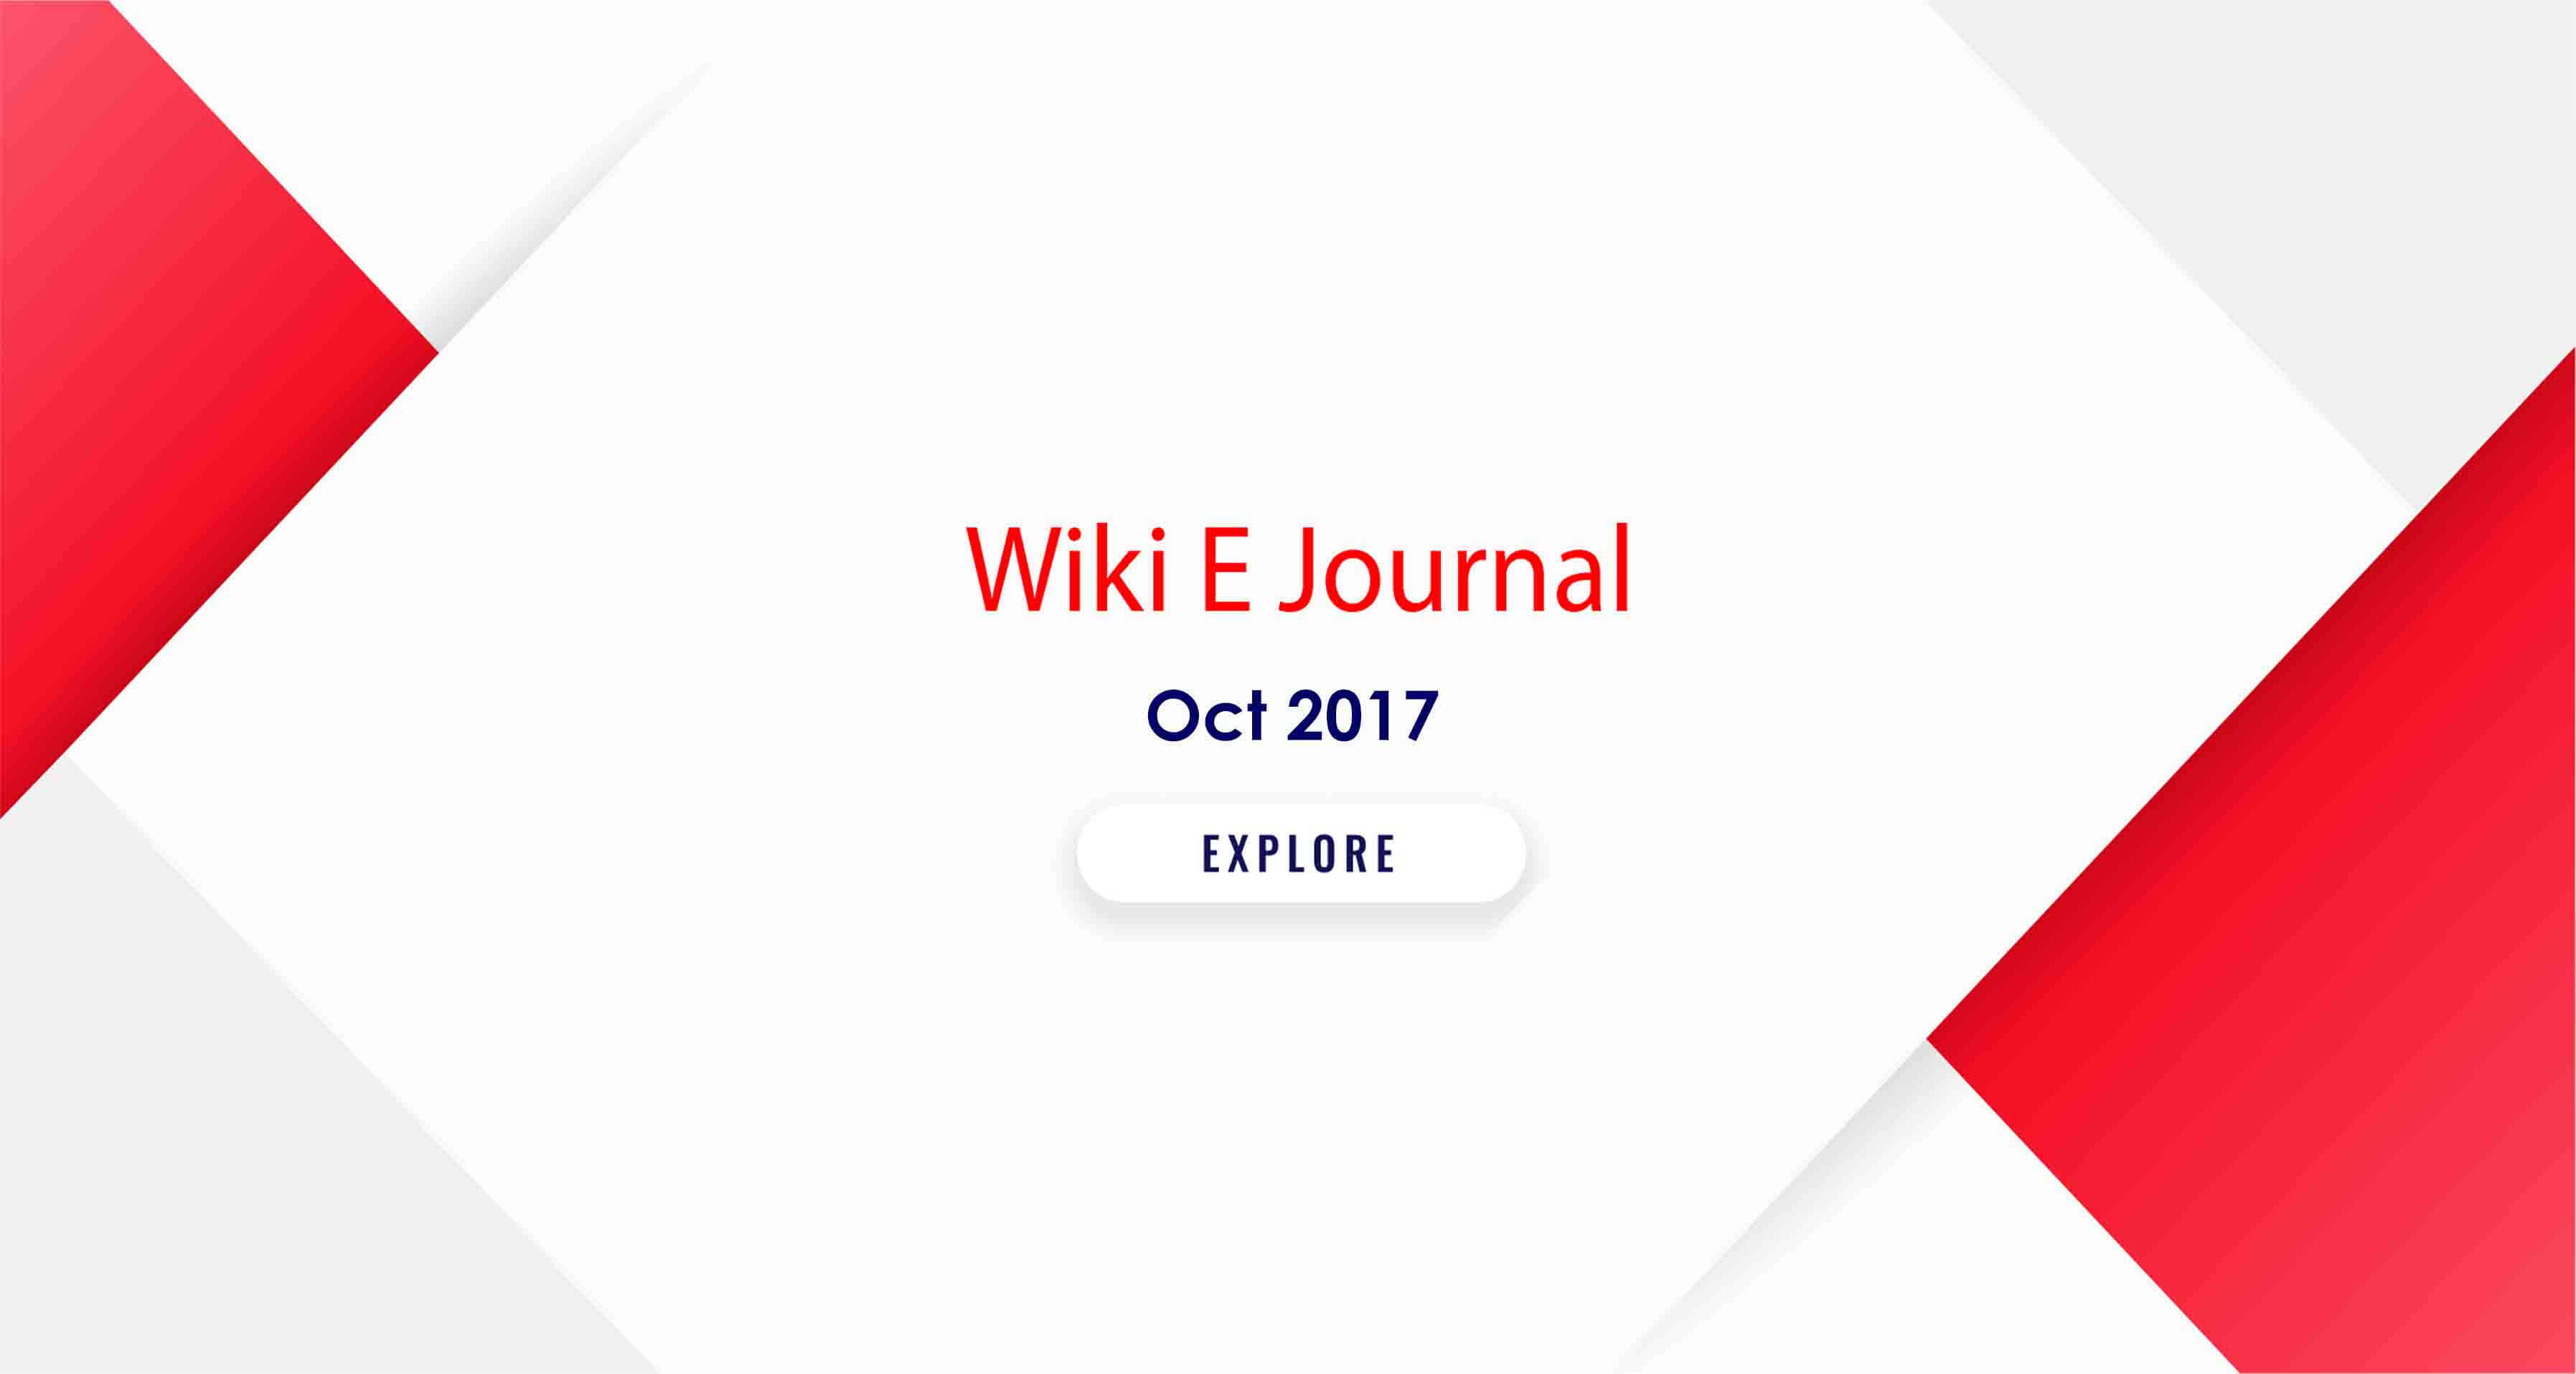 SBS WIKI E Journal Oct 2017